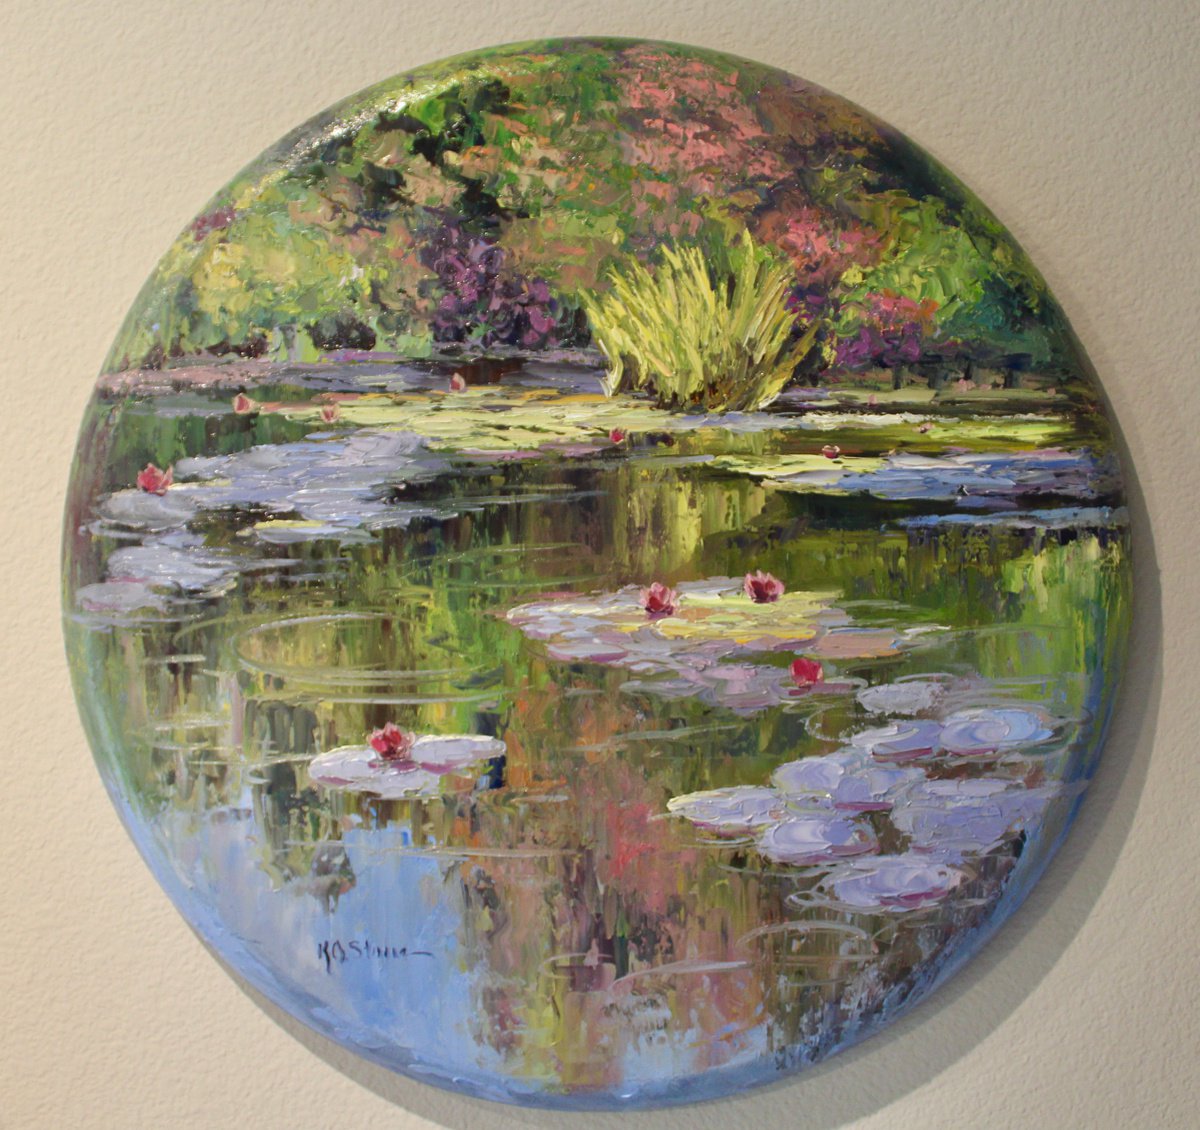 On Golden Pond by Kristen Olson Stone